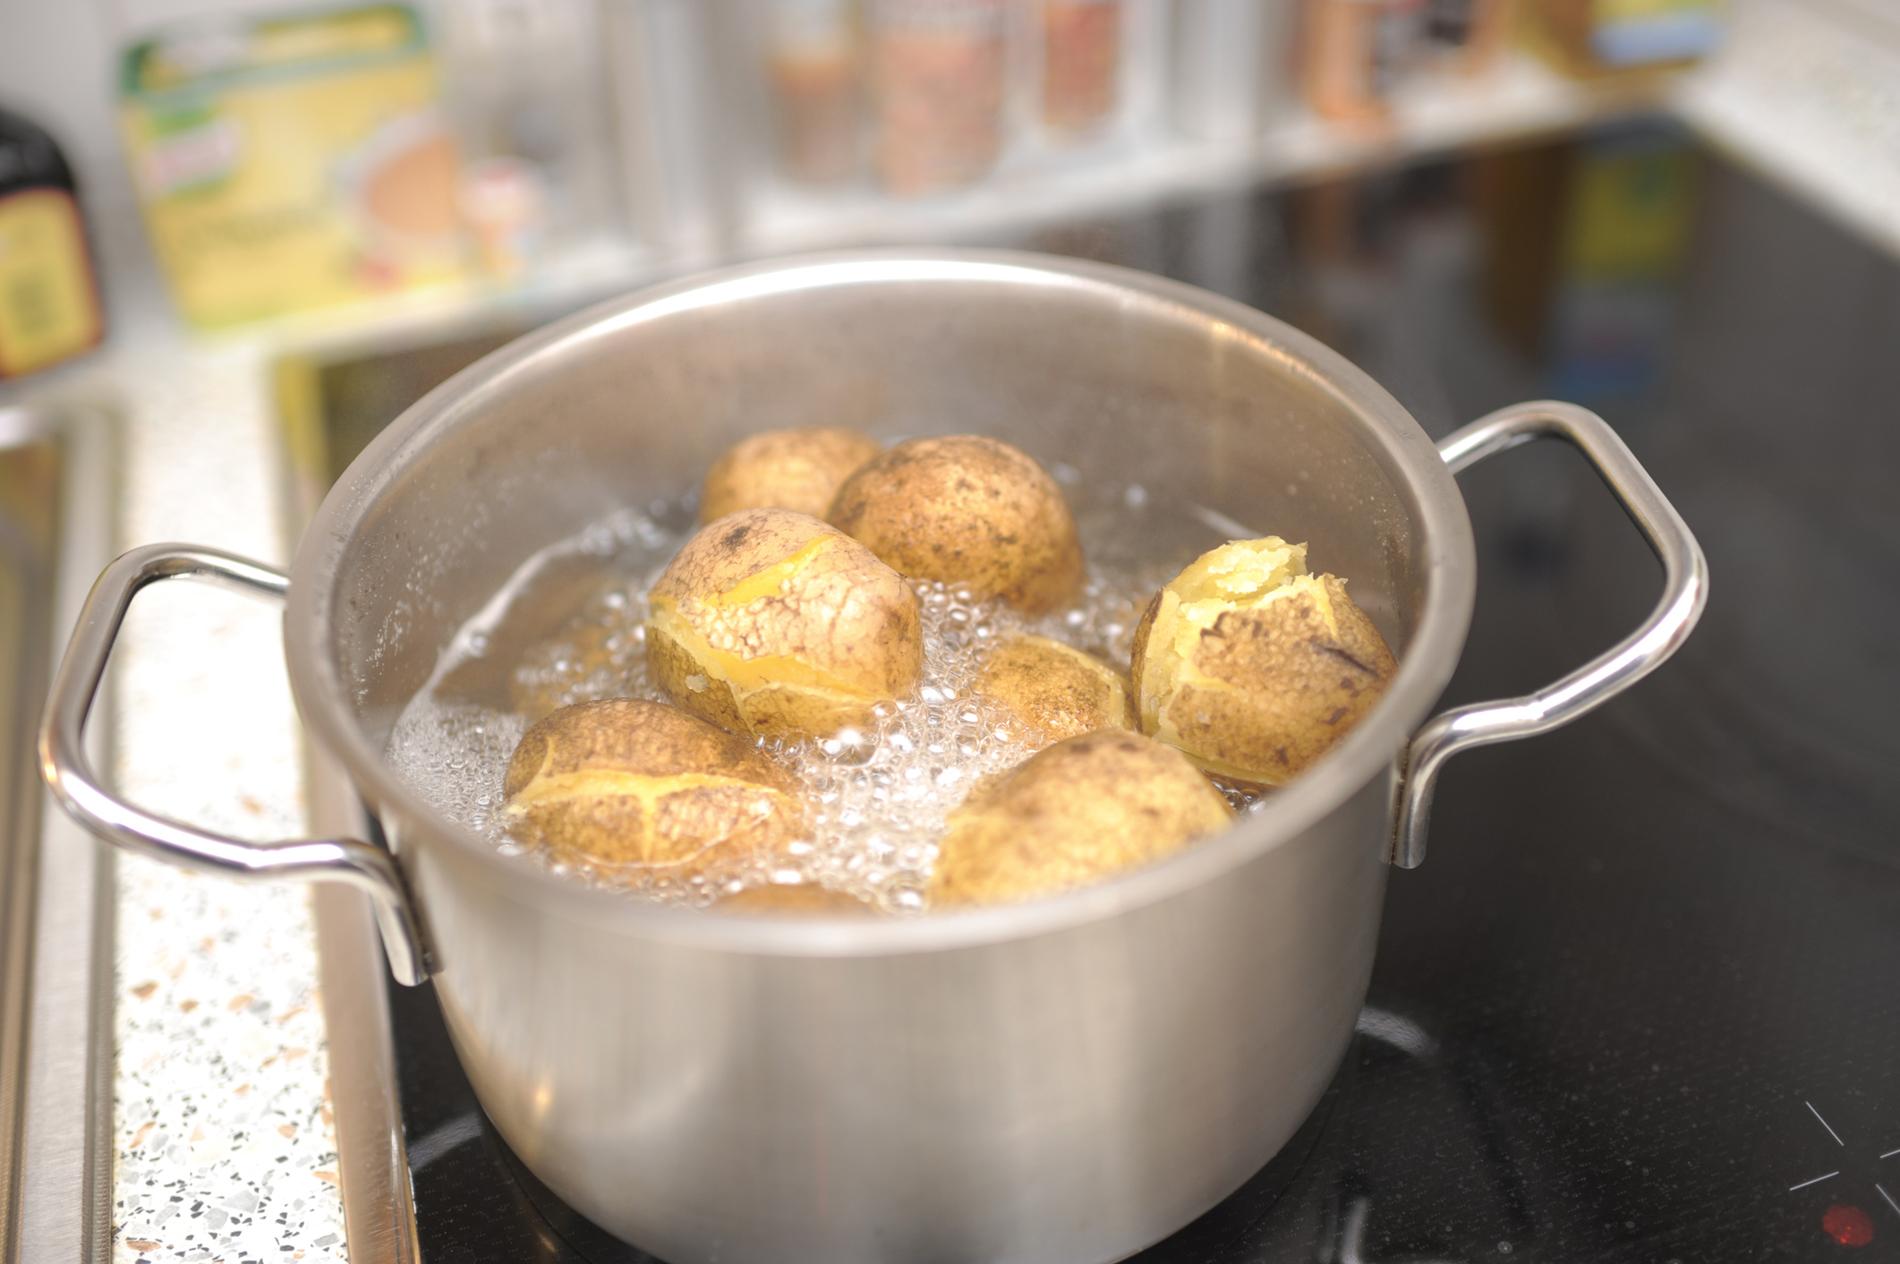 Картошка с водой в кастрюле. Картошка в кастрюле. Картофель кипит в кастрюле. Варка картофеля в кастрюле. Потато в кастрюле.